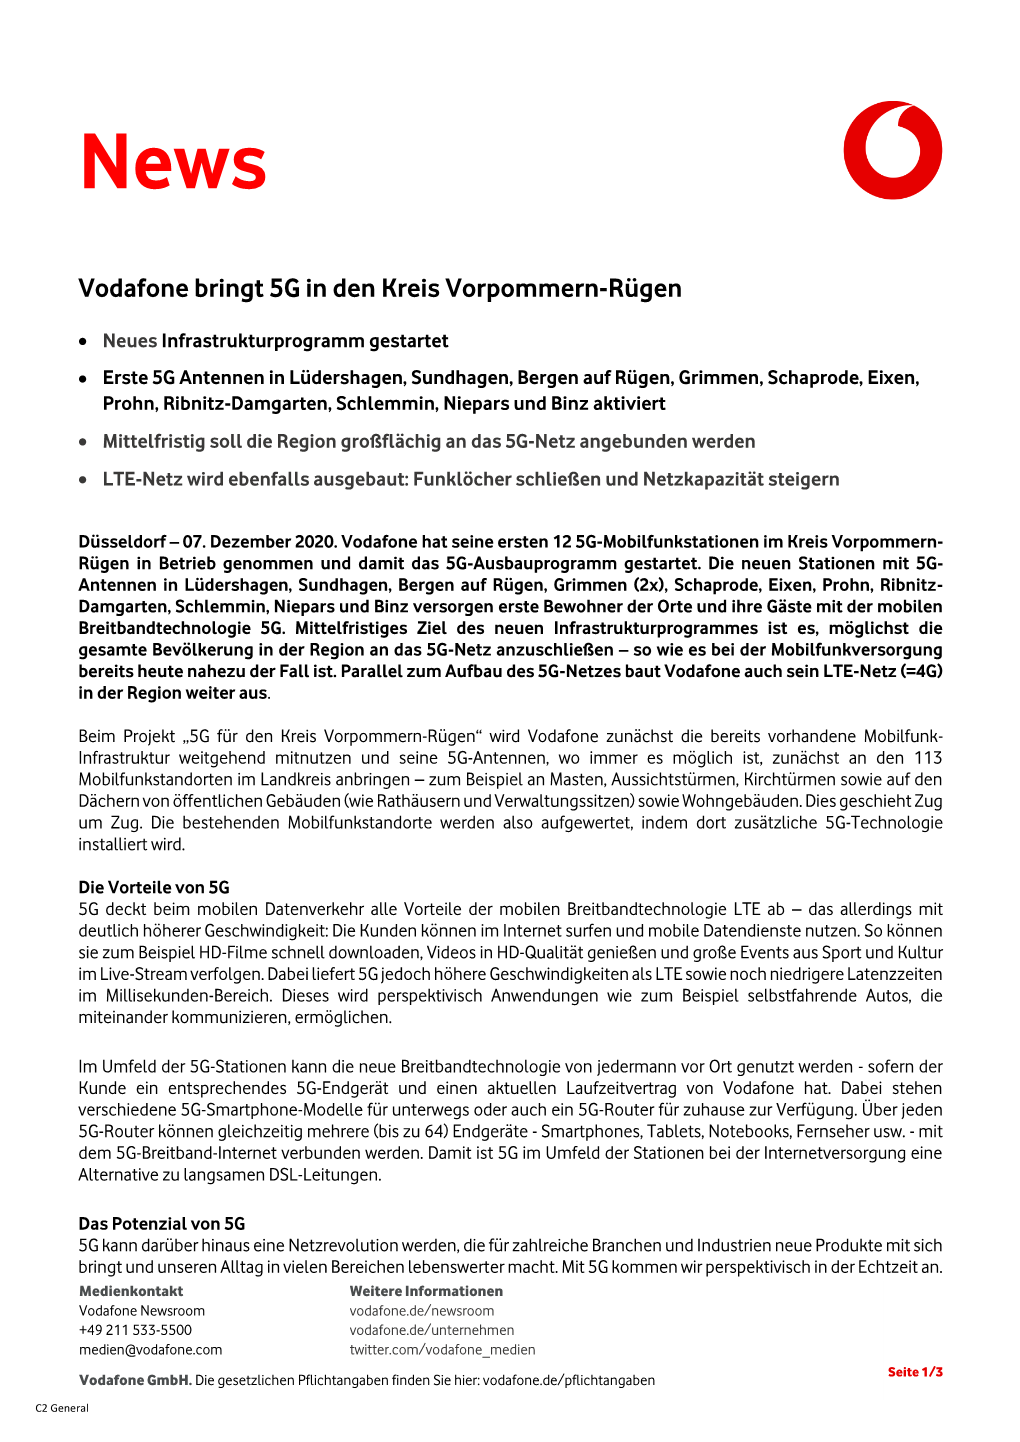 Vodafone Bringt 5G in Den Kreis Vorpommern-Rügen